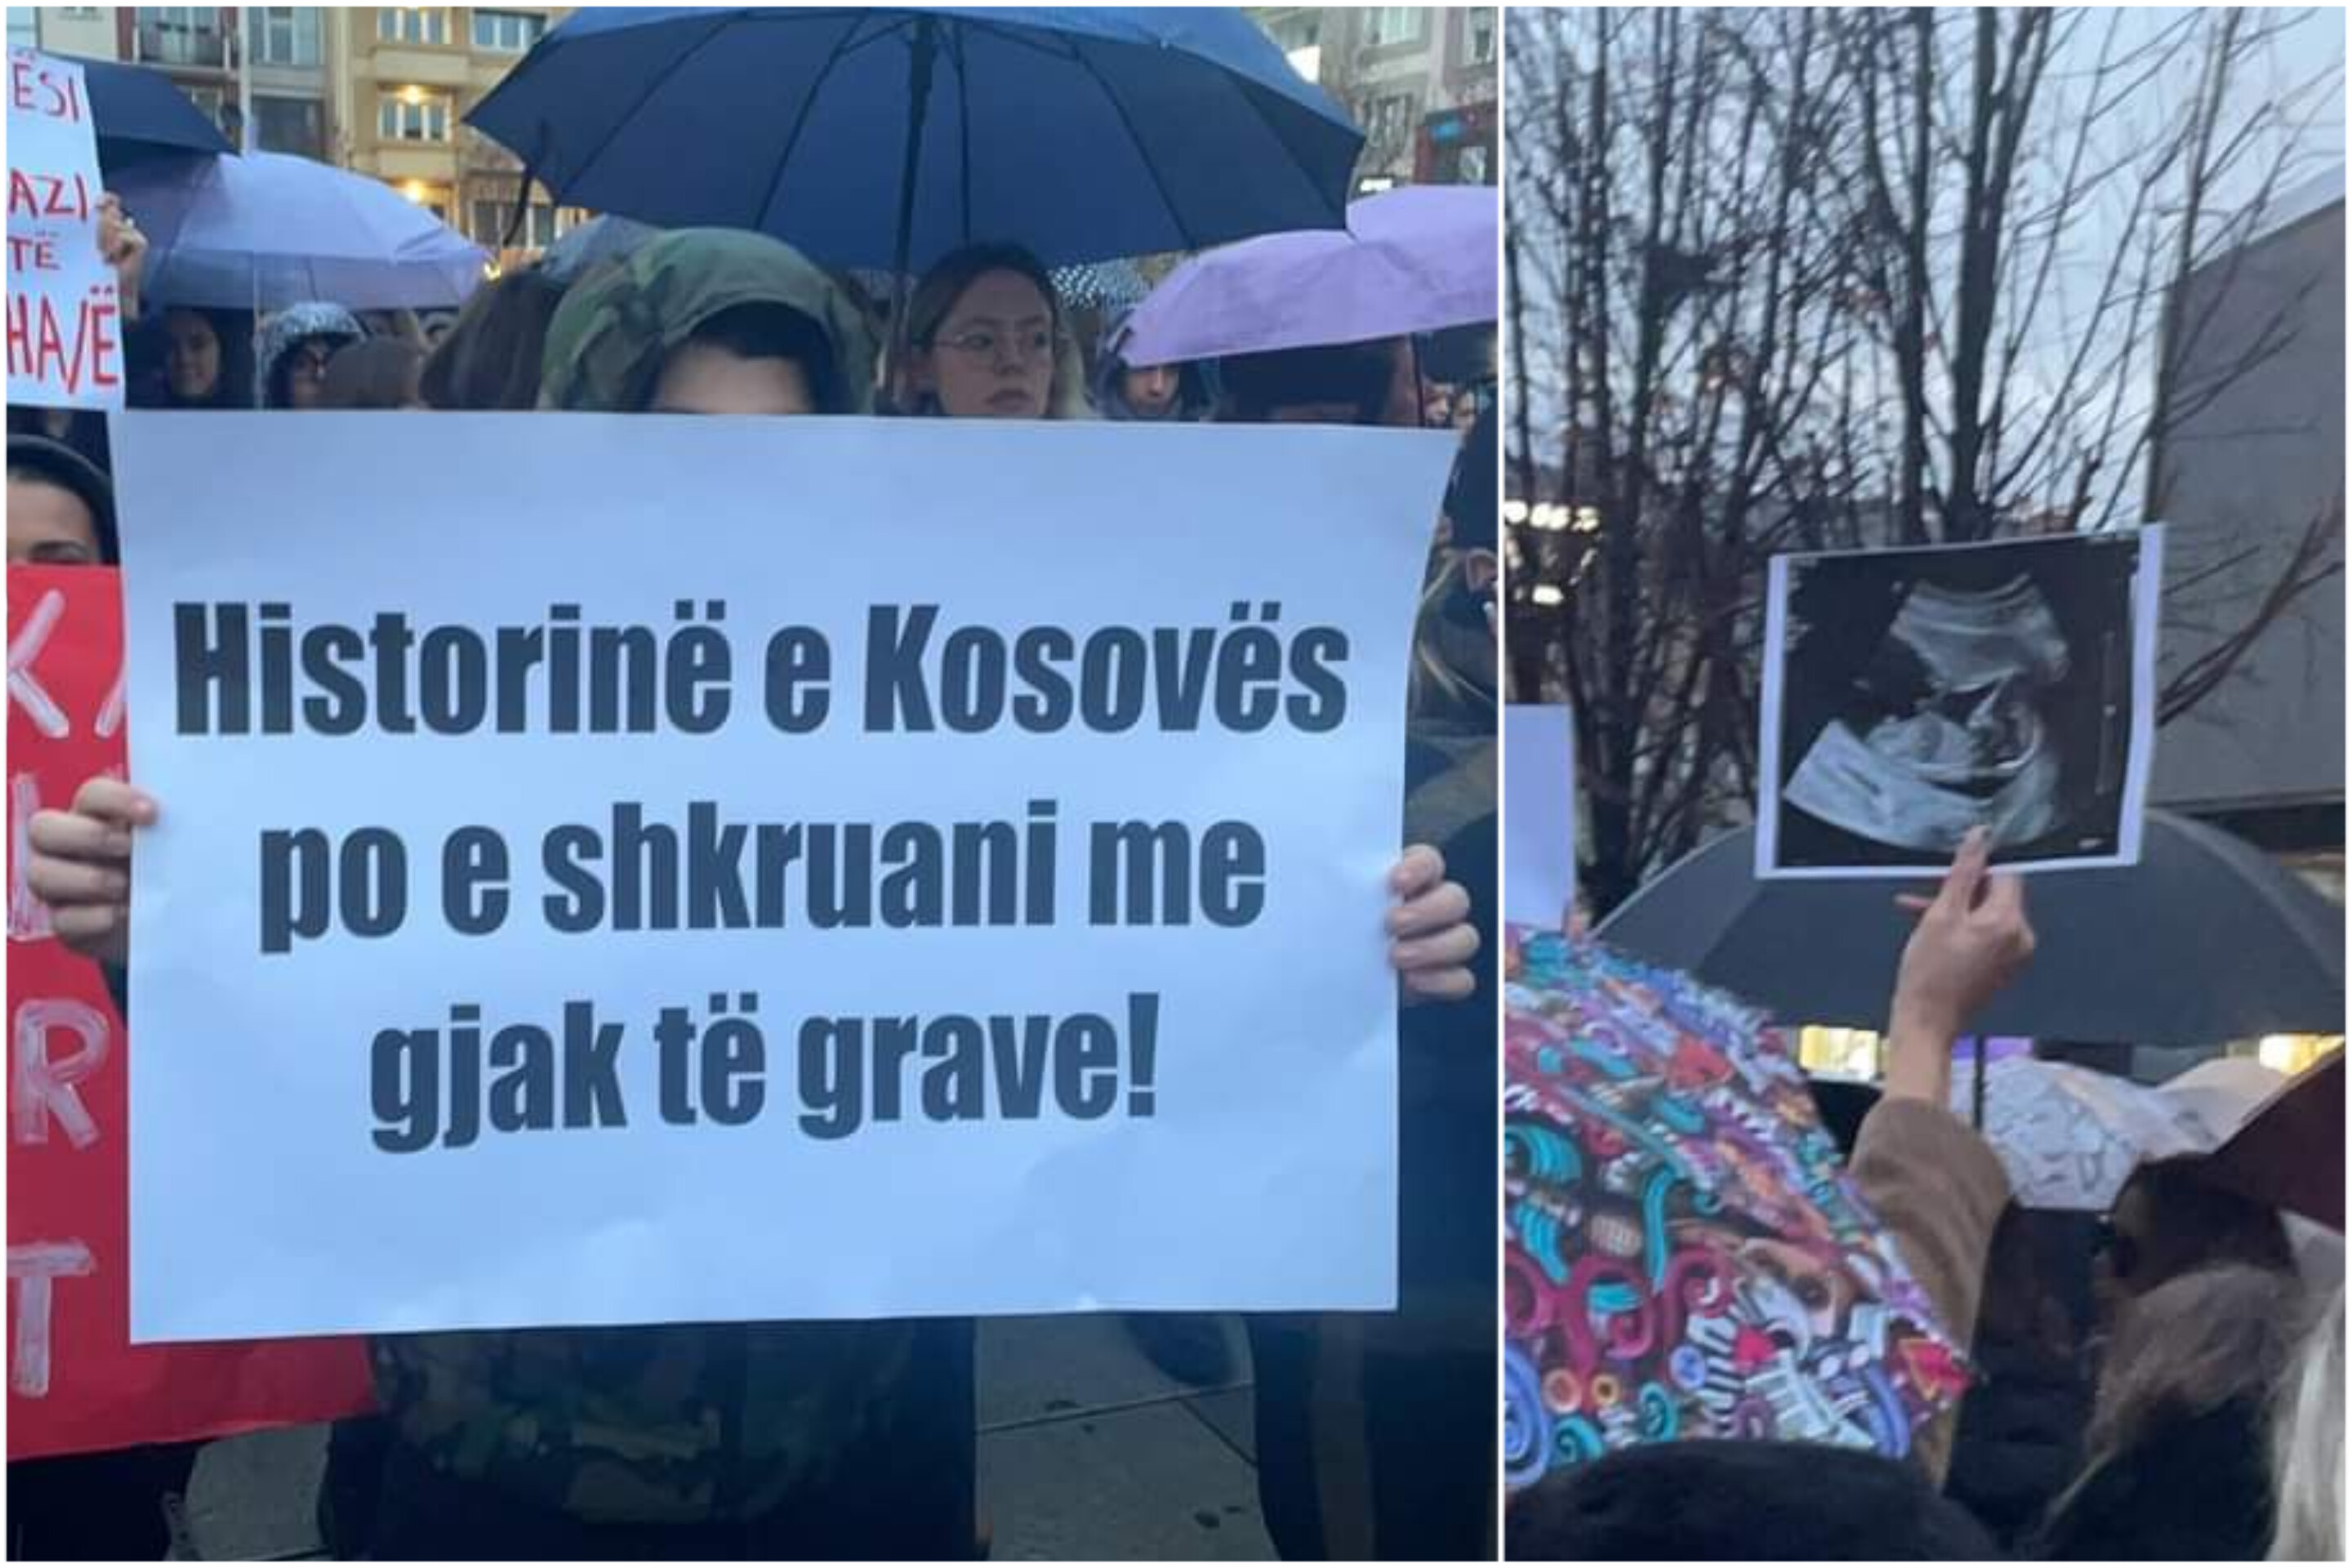 “Historinë e Kosovës po e shkruani me gjak të grave”, pamje nga protesta për gruan shtatzënë që u vra